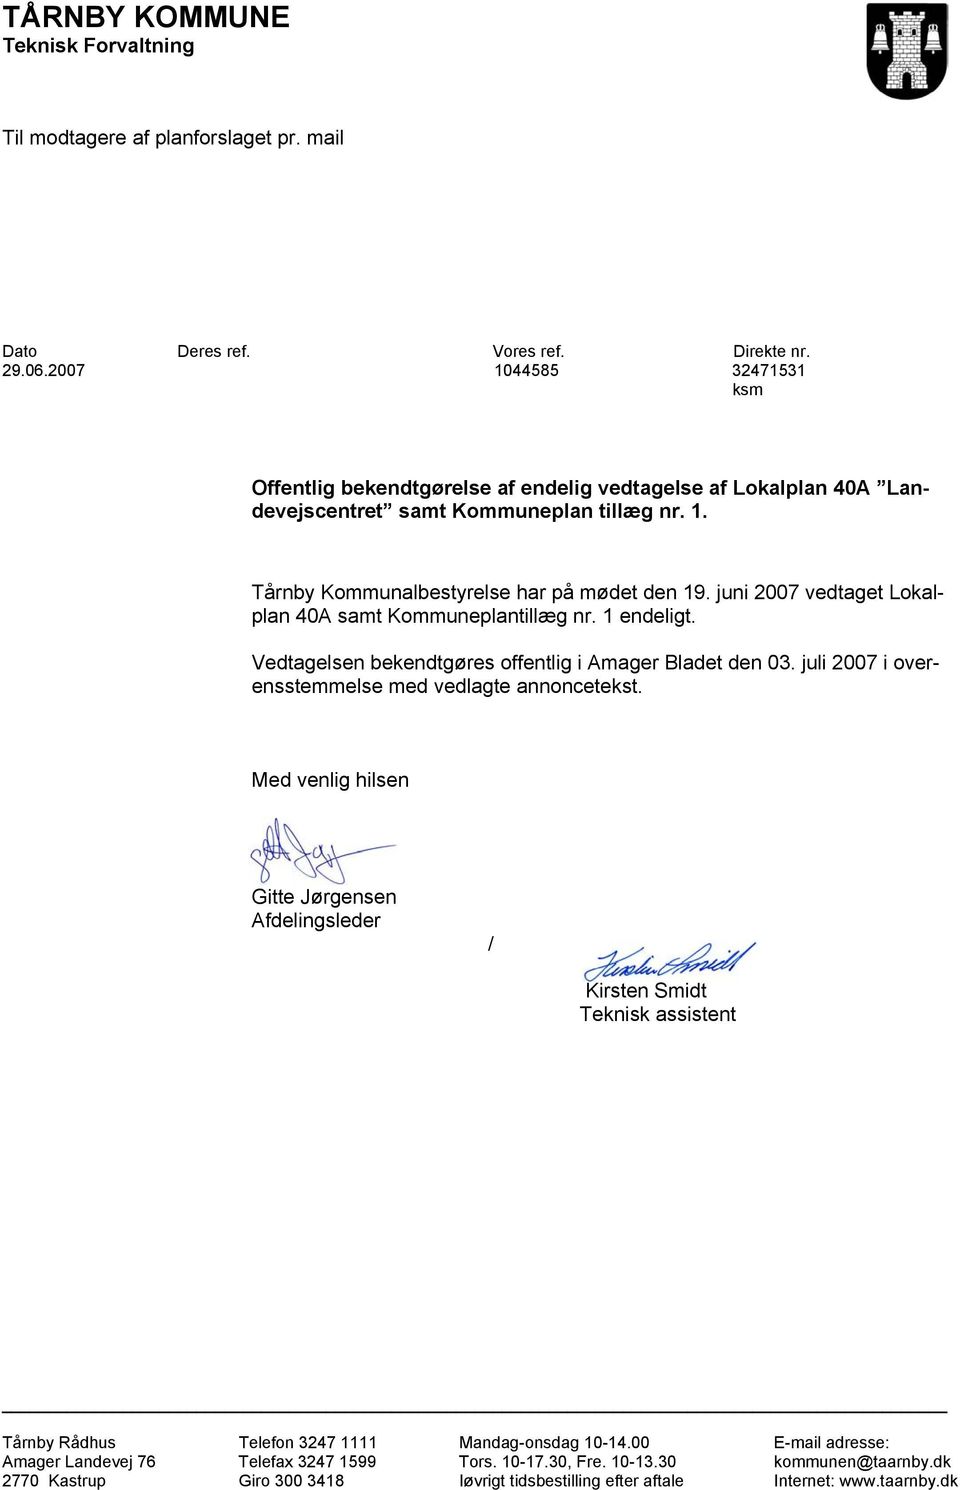 juni 2007 vedtaget Lokalplan 40A samt Kommuneplantillæg nr. 1 endeligt. Vedtagelsen bekendtgøres offentlig i Amager Bladet den 03. juli 2007 i overensstemmelse med vedlagte annoncetekst.